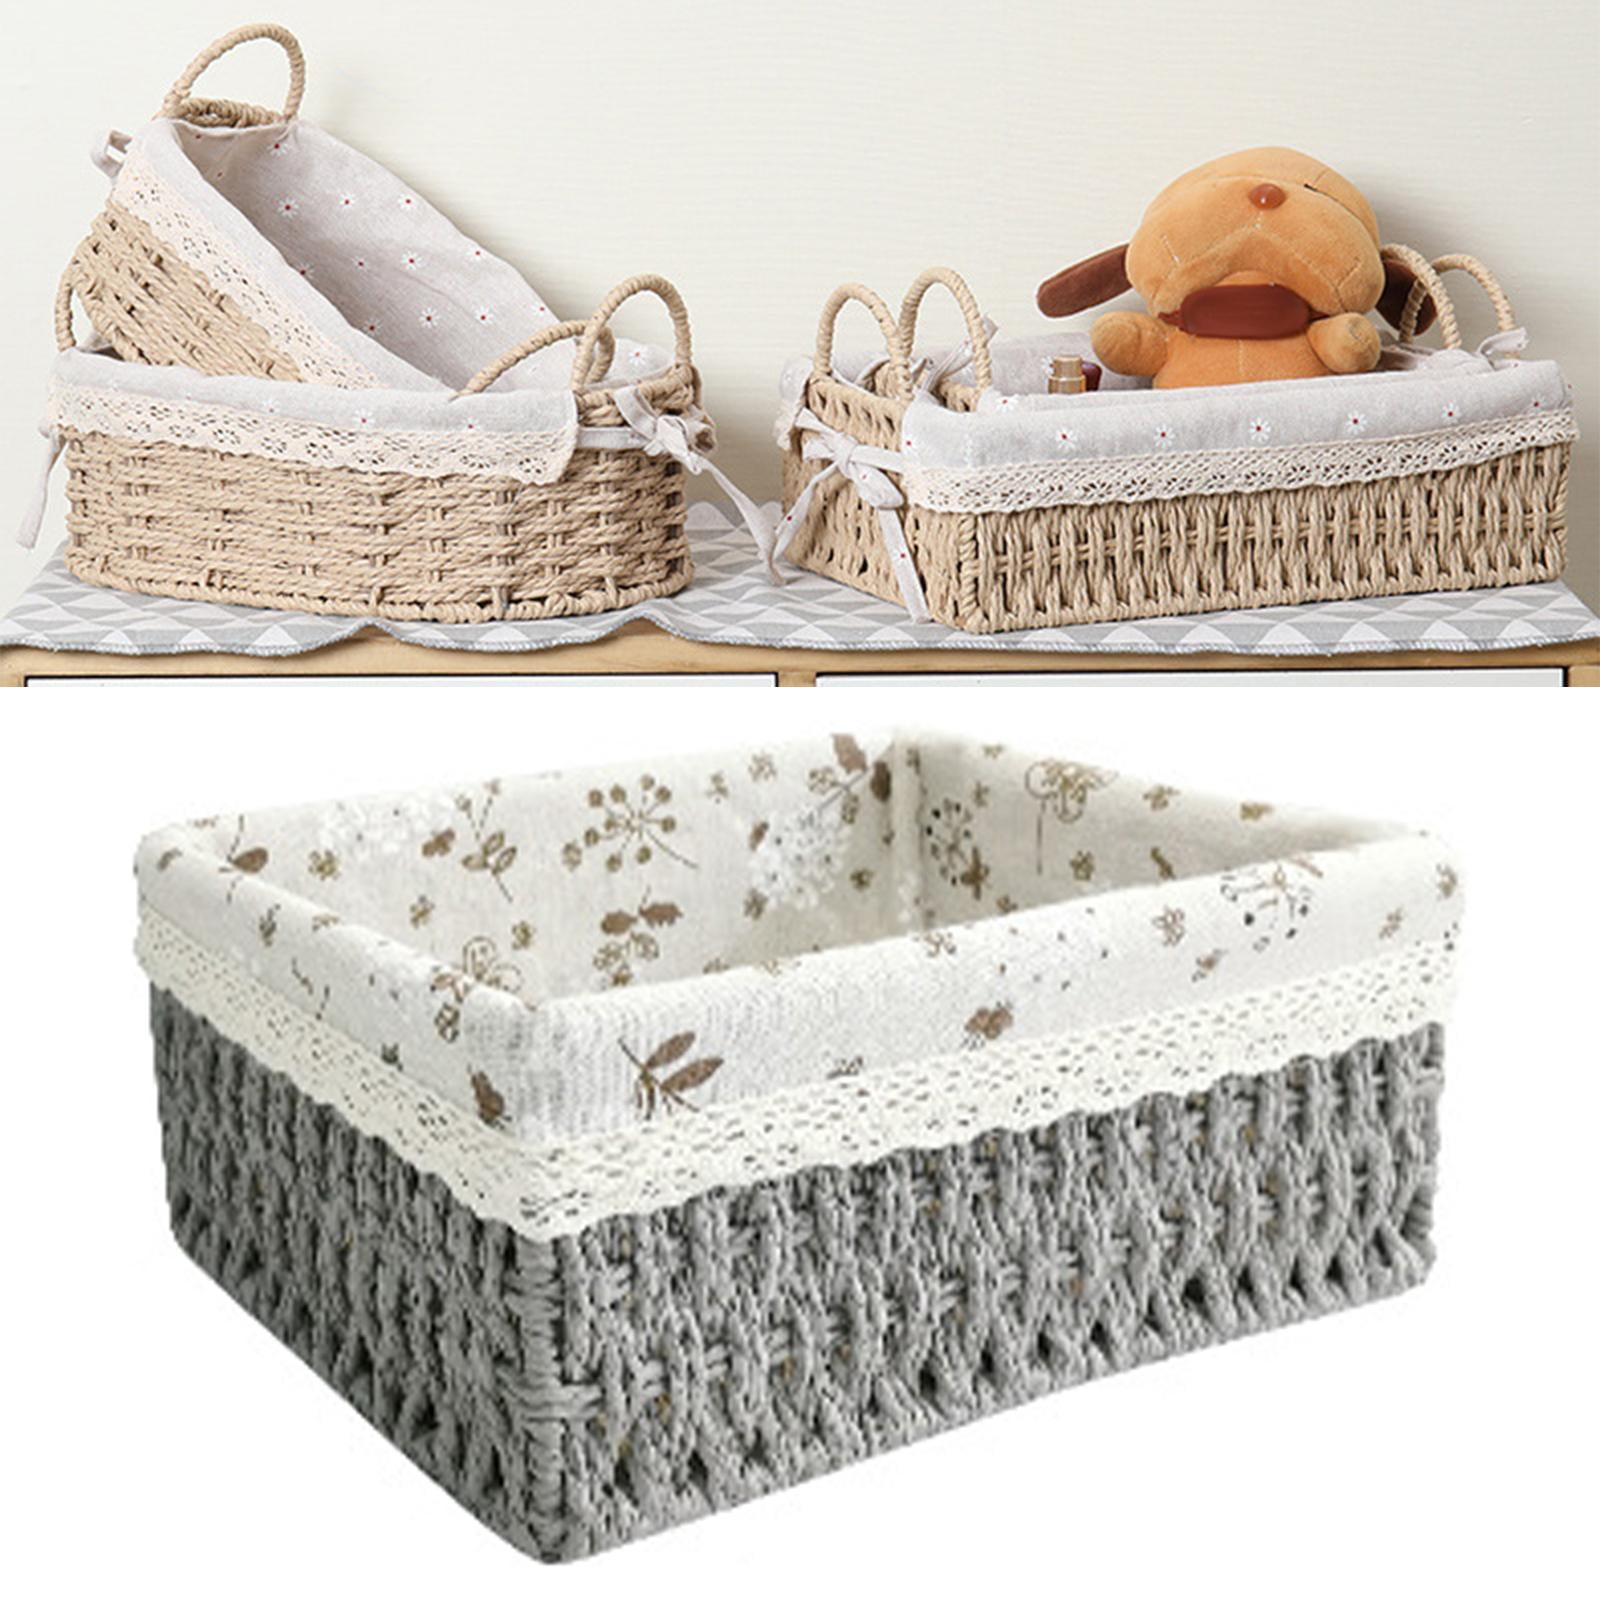 Details about   decorative baskets 